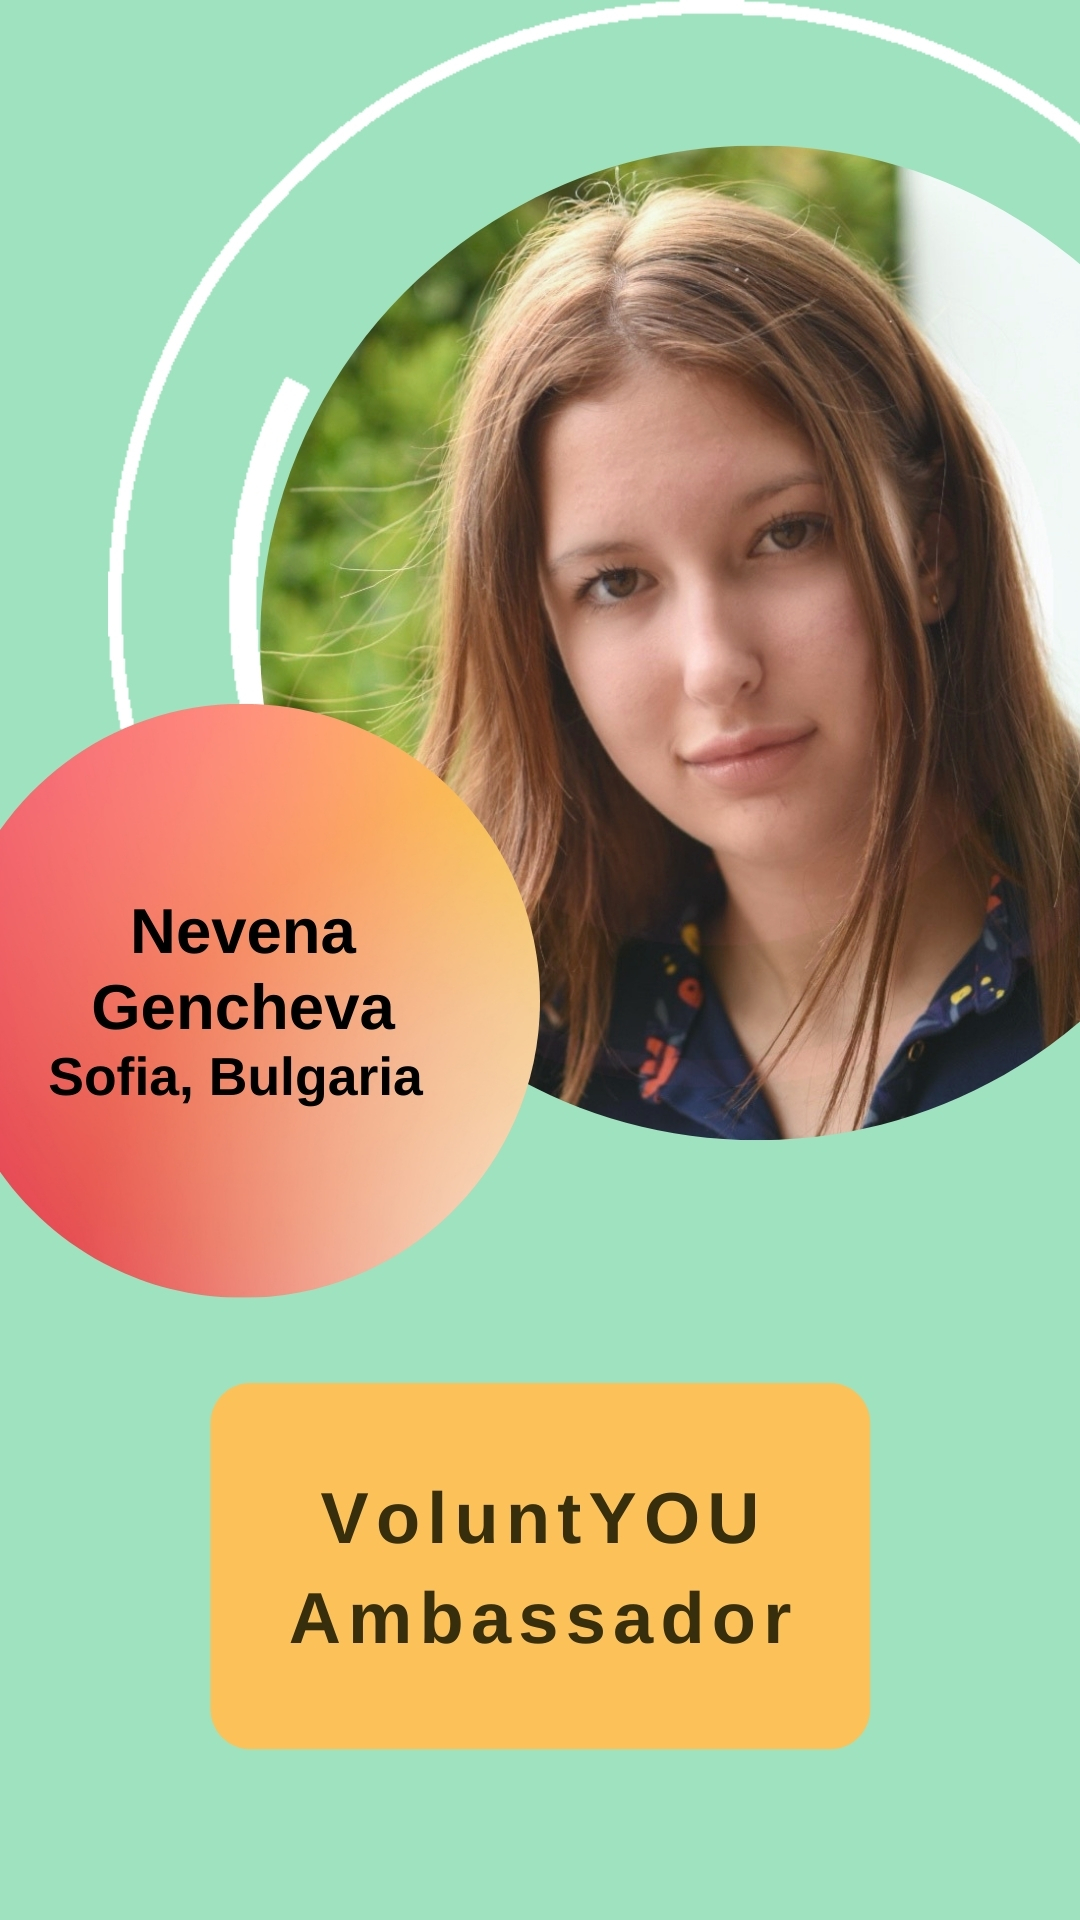 Nevena Gencheva - VoluntYOU Ambassador; Sofia, Bulgaria